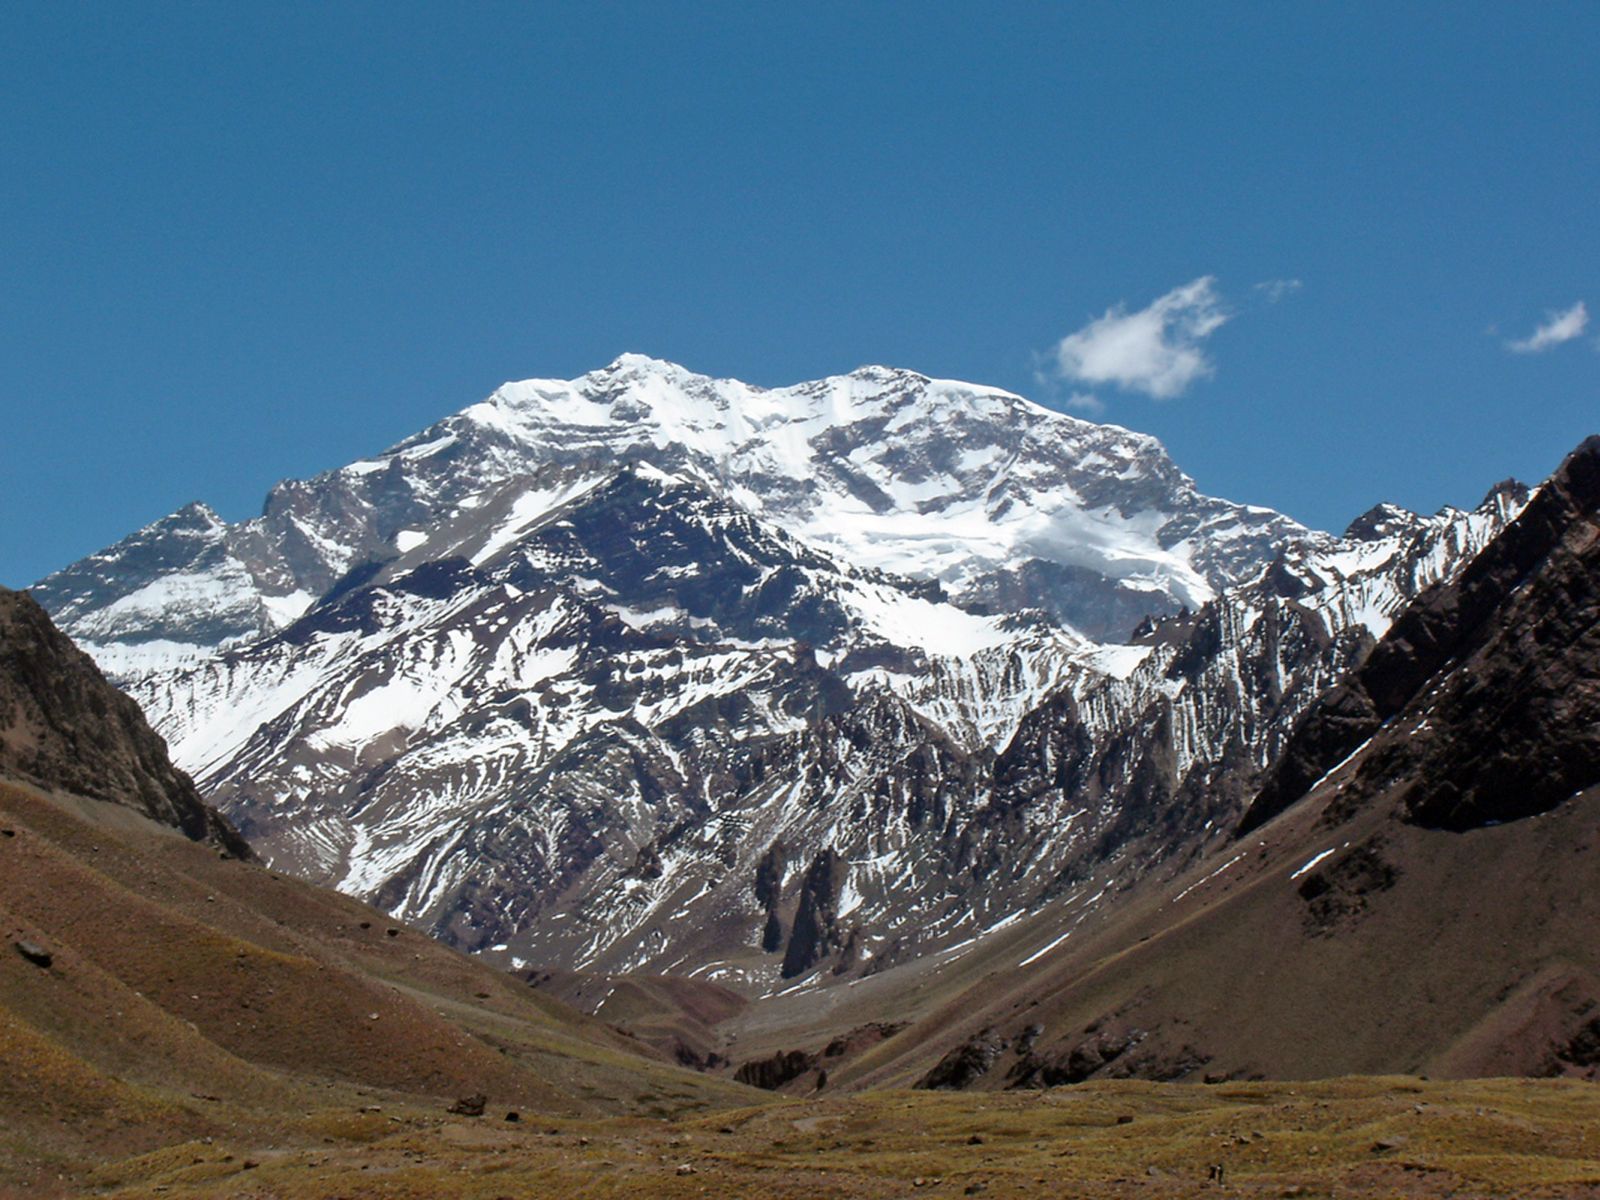  Аконкагуа (Aconcagua), 6962 м